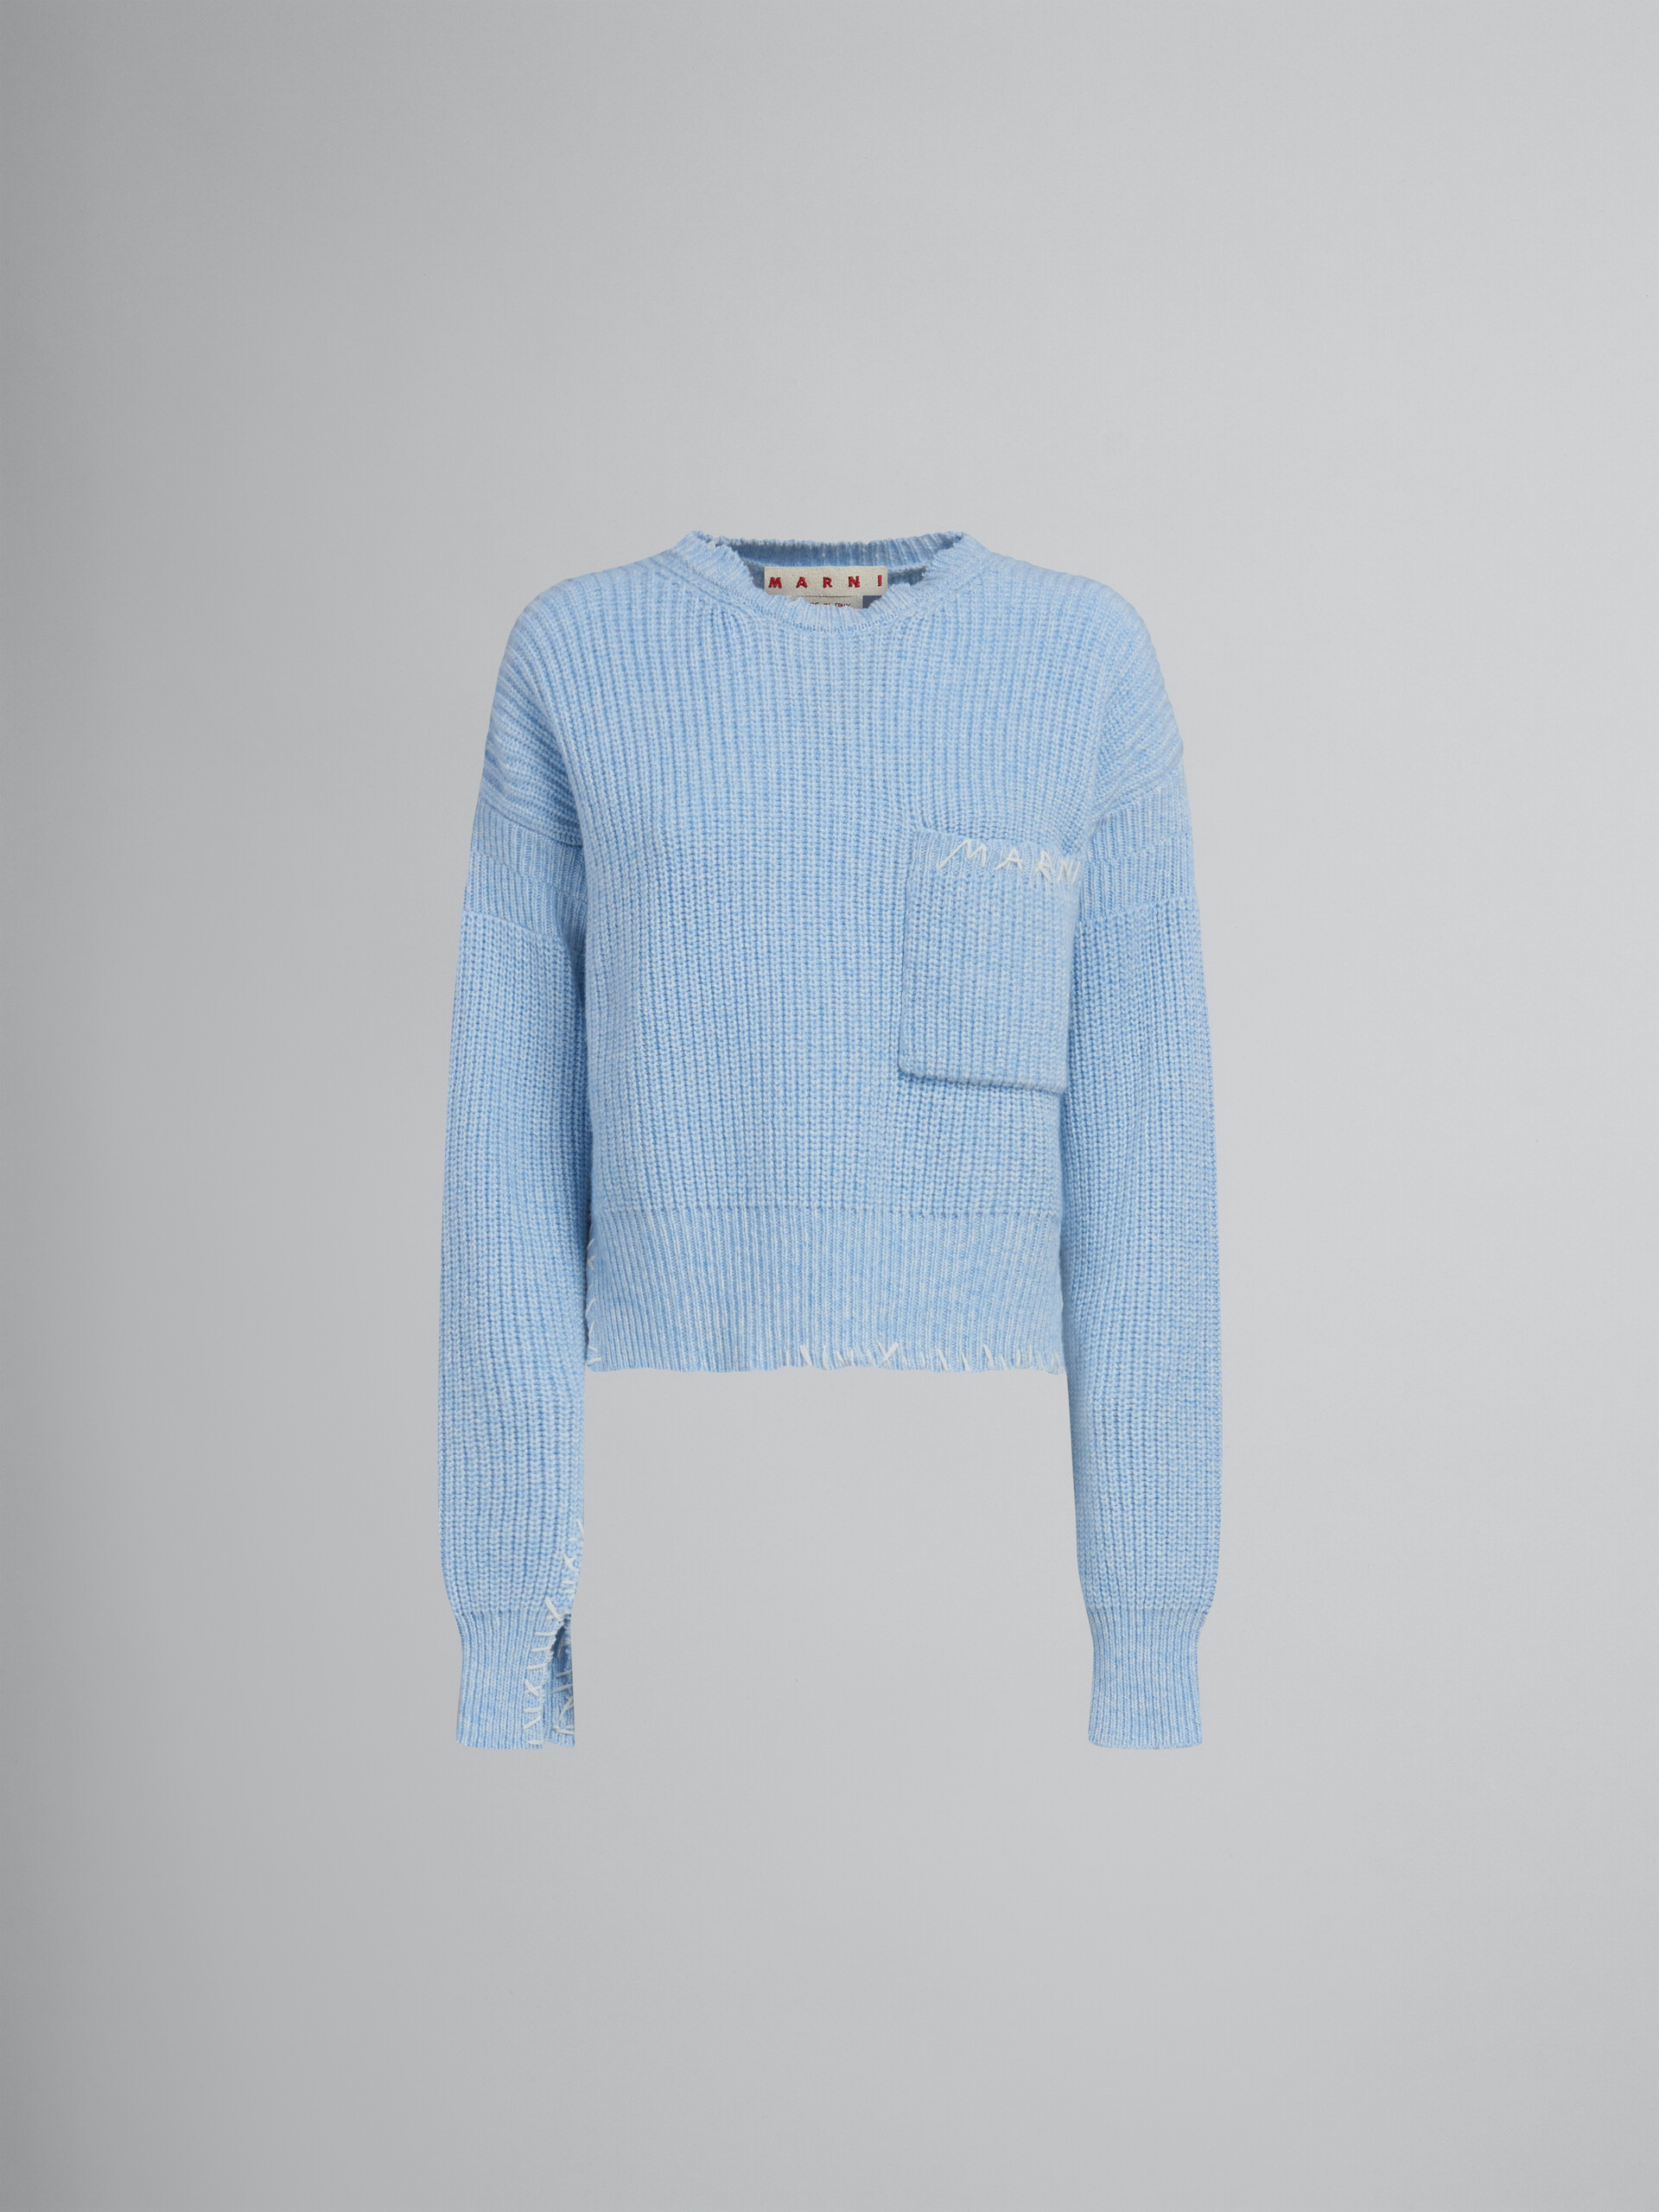 Jersey azul de mouliné con efecto remiendo - jerseys - Image 1